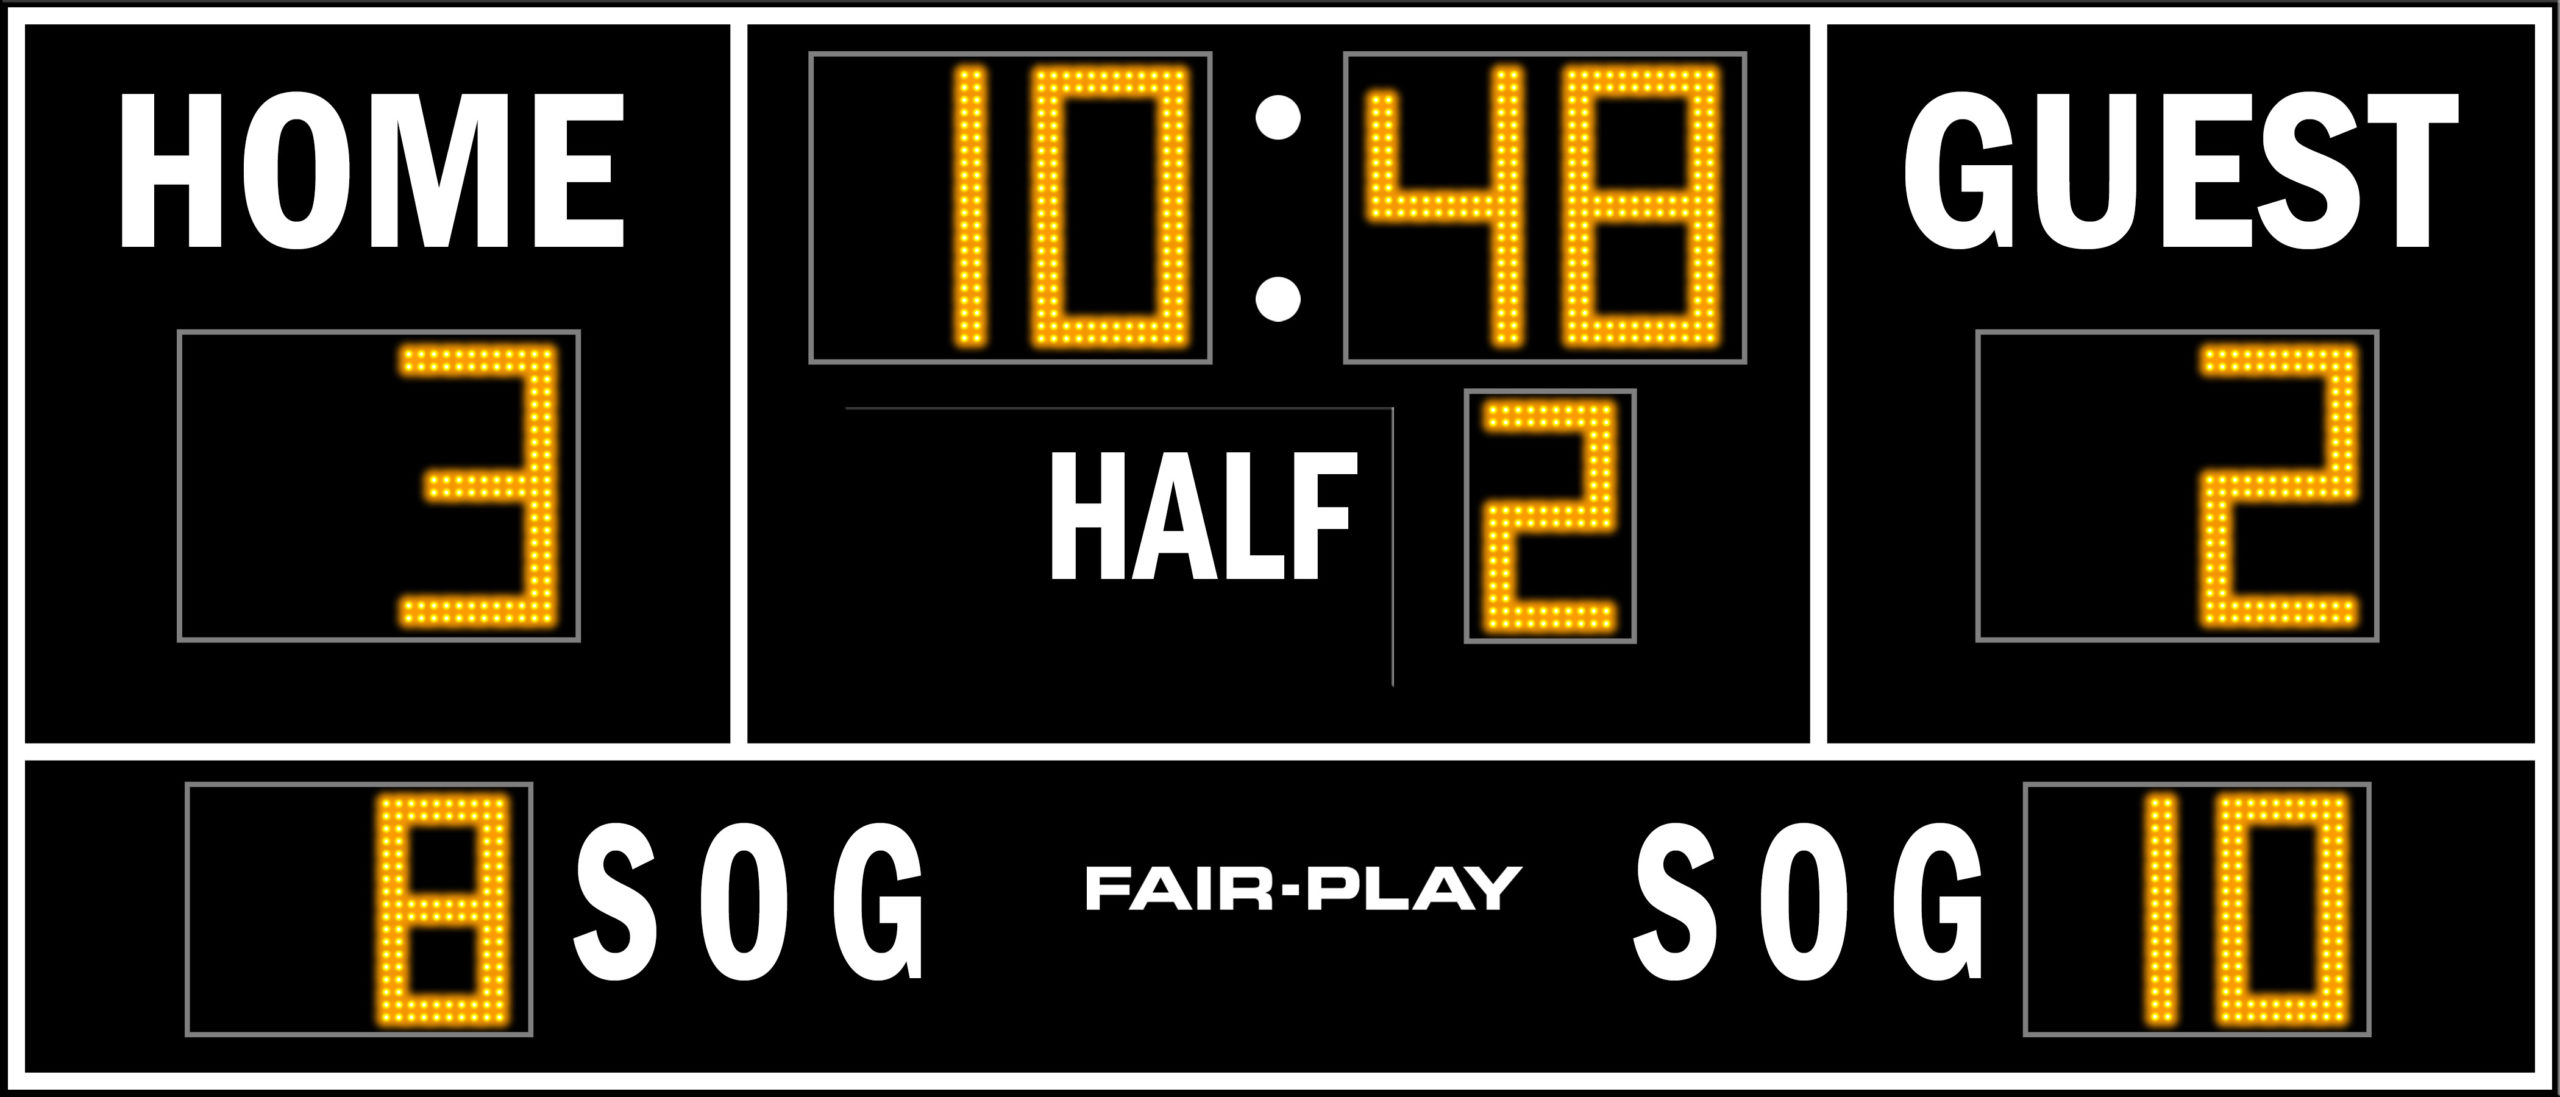 SC-8114-2 Soccer Scoreboard - Fair-Play Scoreboards